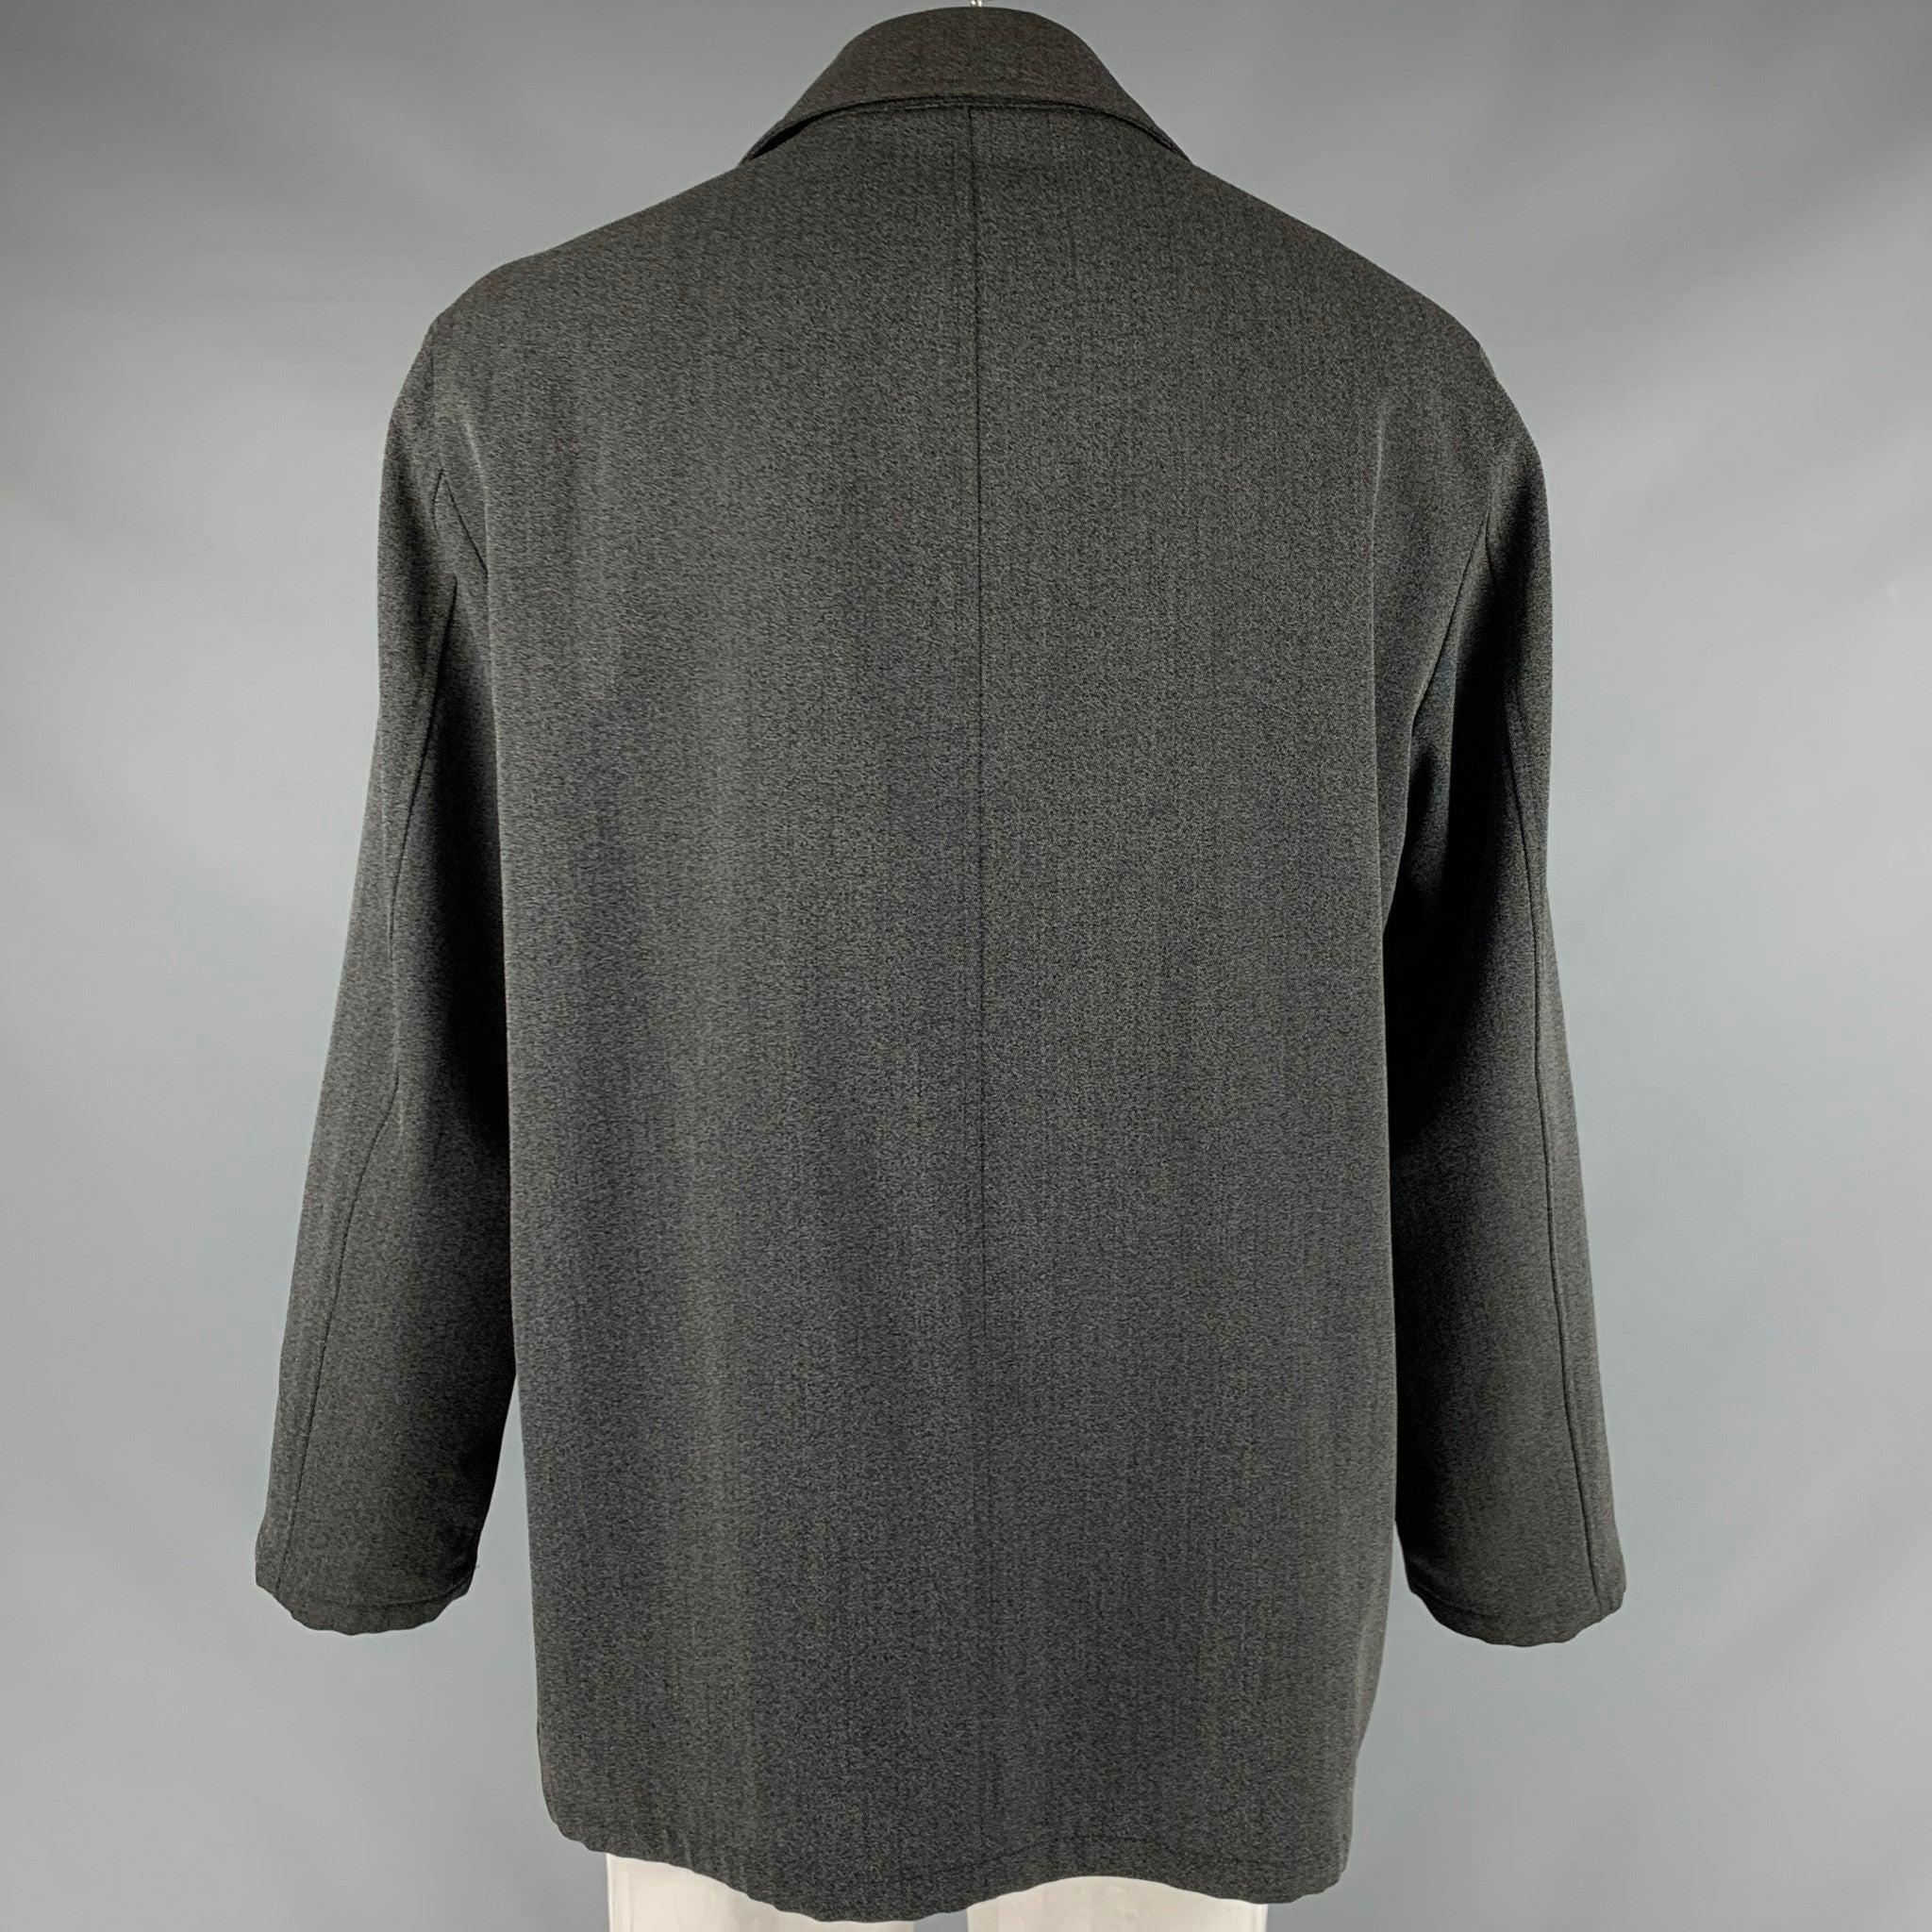 ARMANI COLLEZIONI Size 42 Grey Black Nailhead Wool Cotton Coat In Good Condition For Sale In San Francisco, CA